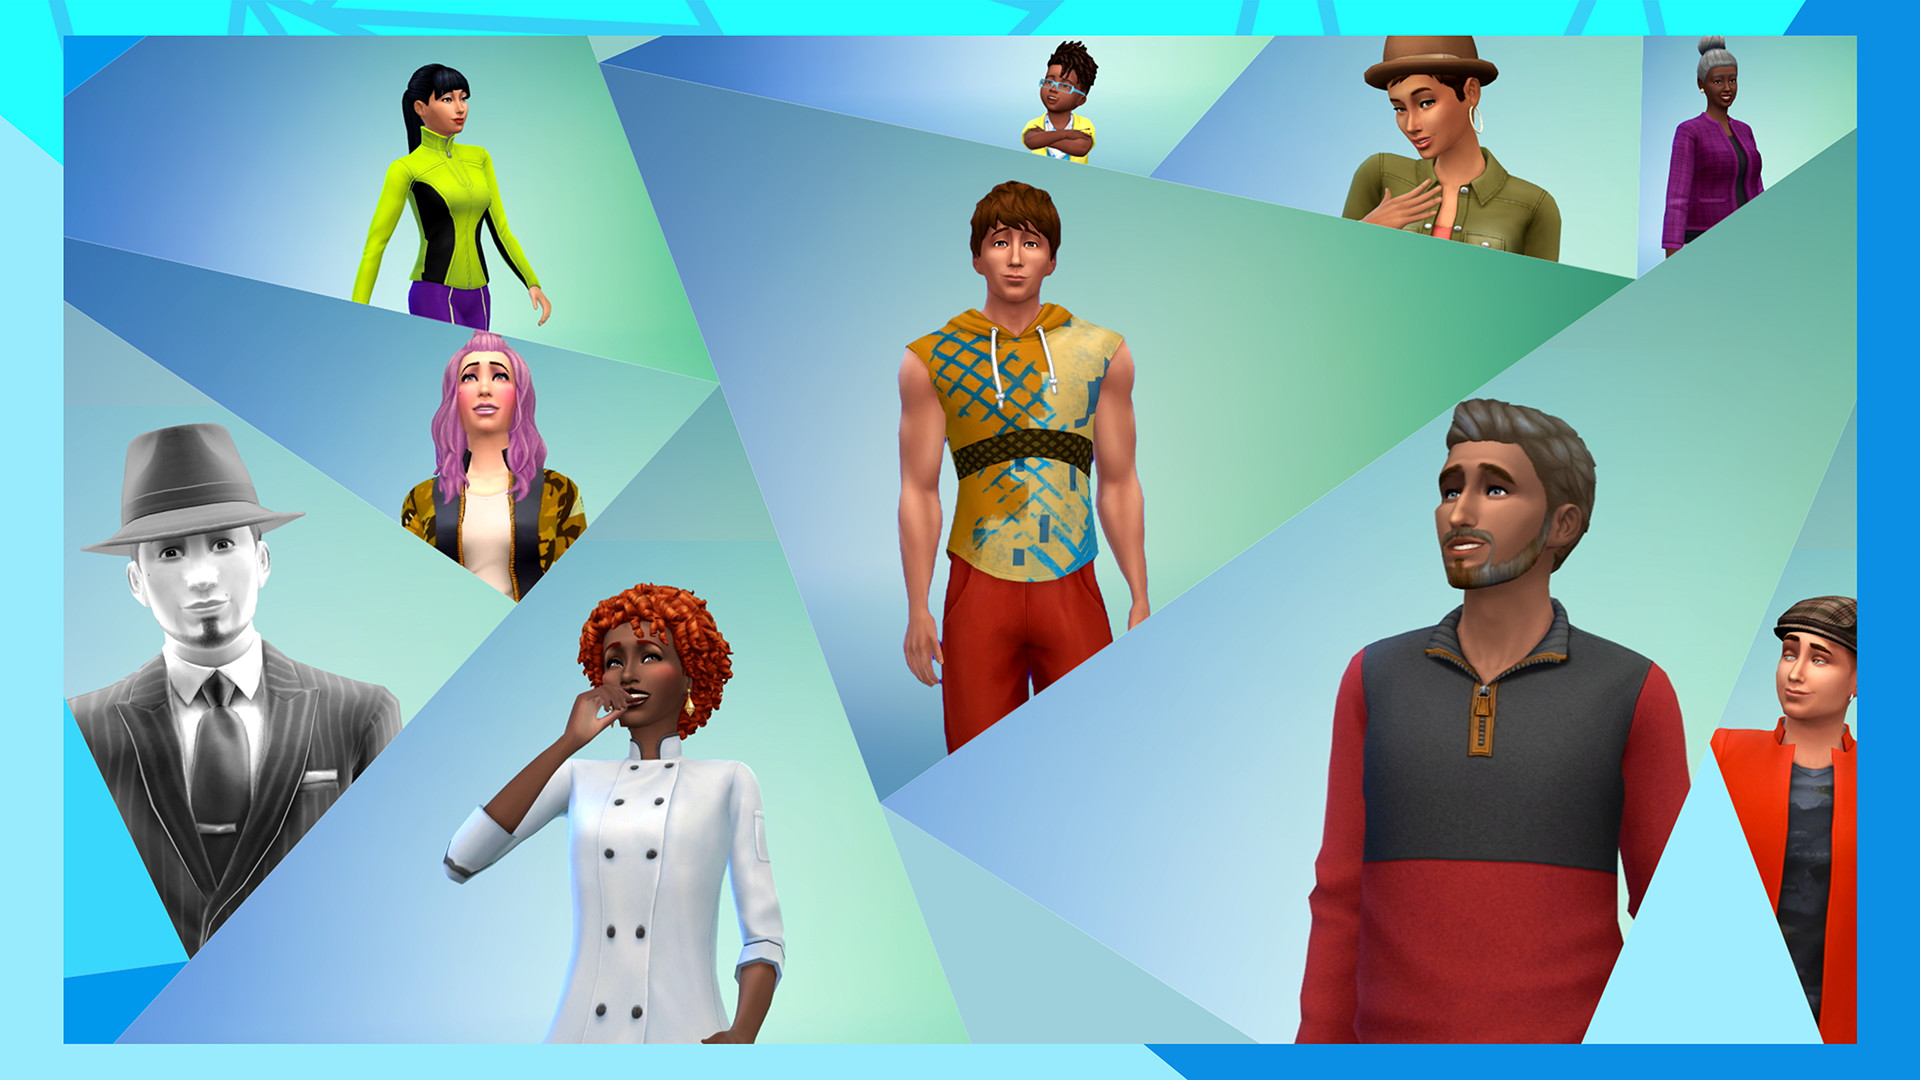 模拟人生4豪华版/The Sims 4 Deluxe Edition